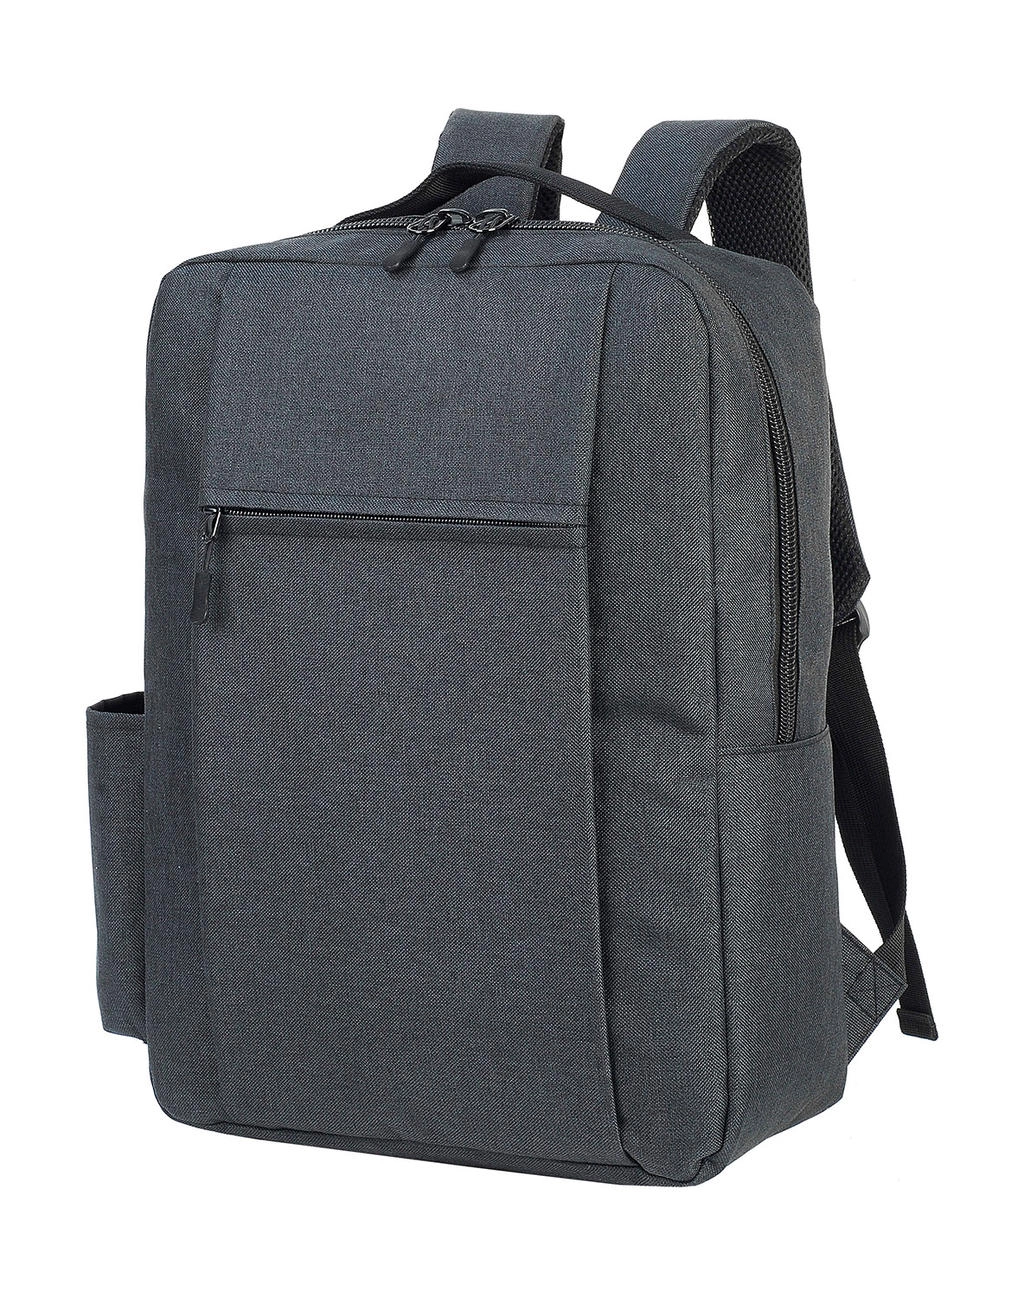 Sembach Basic Laptop Backpack zum Besticken und Bedrucken in der Farbe Black Melange mit Ihren Logo, Schriftzug oder Motiv.